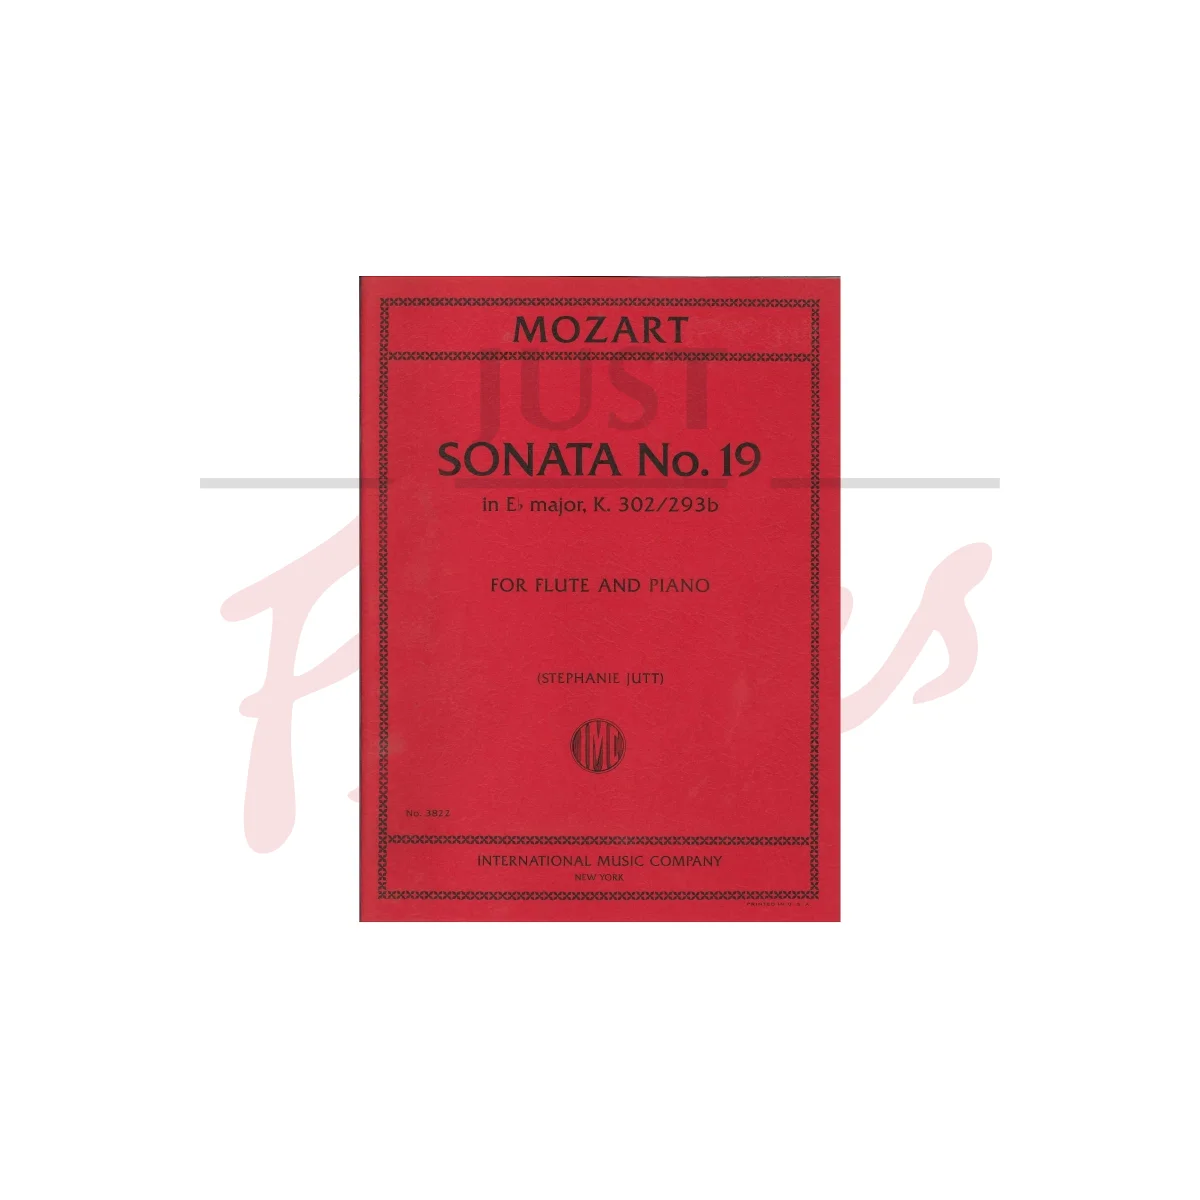 Sonata No. 19 in E flat major for Flute and Piano